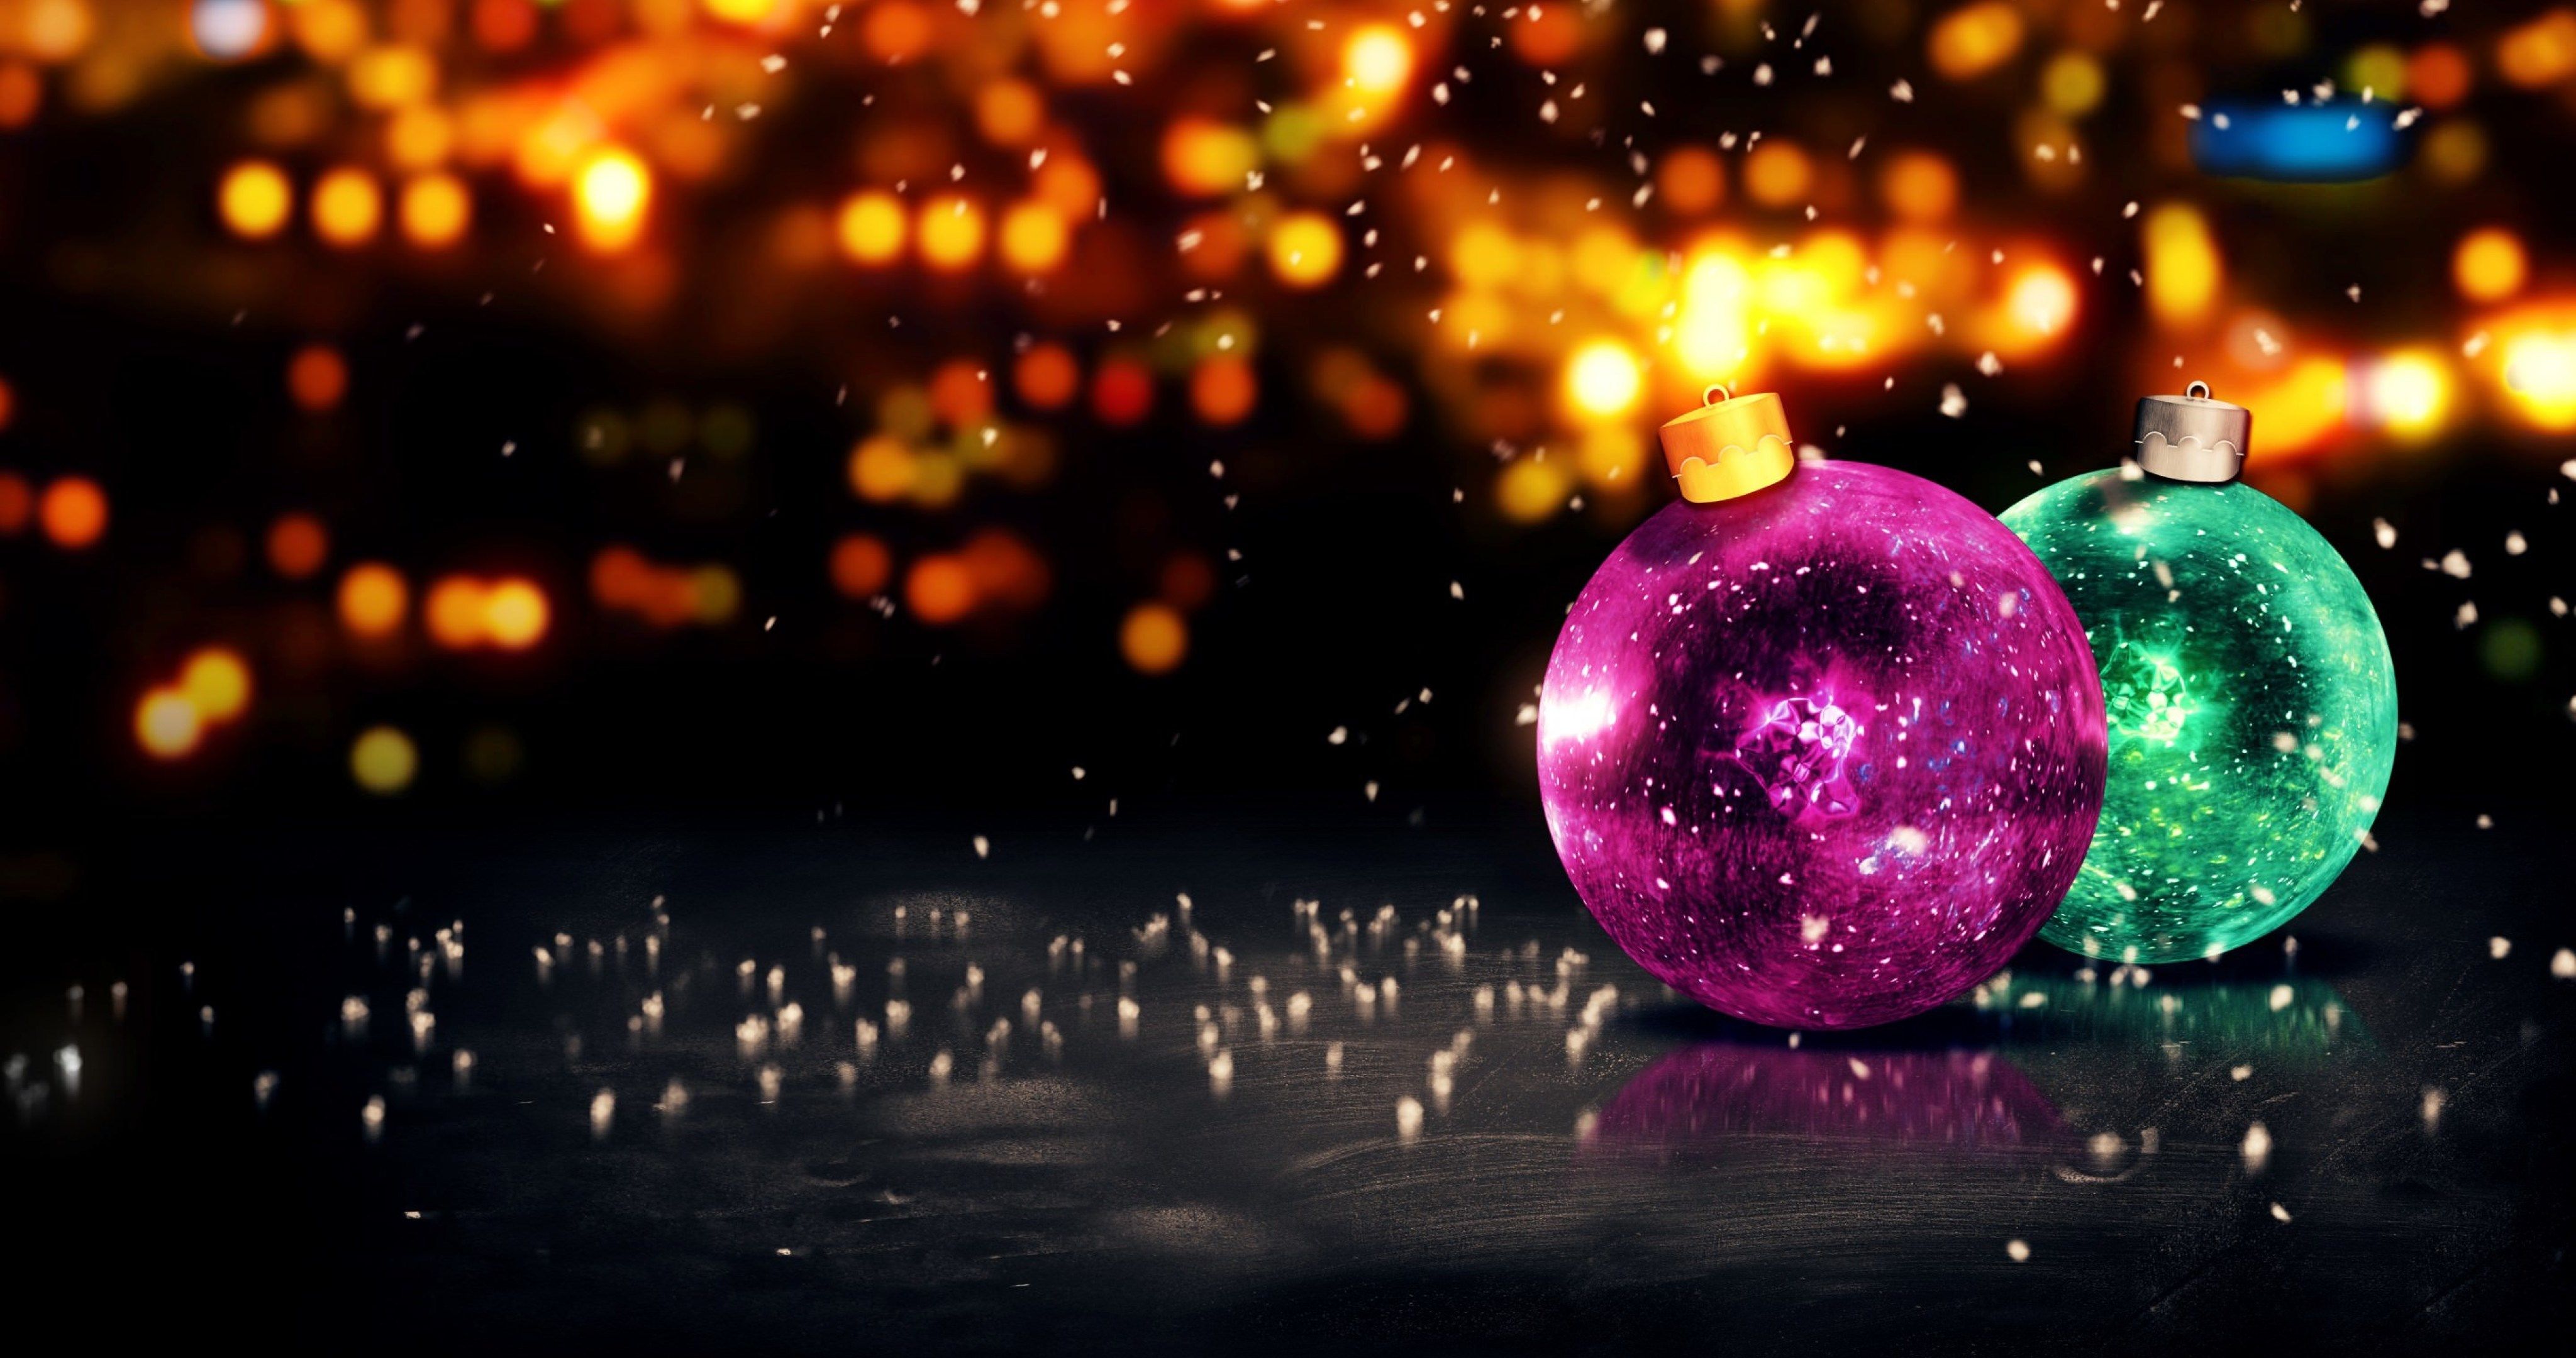 merry christmas full hd wallpaper,purple,light,sky,sphere,christmas ornament